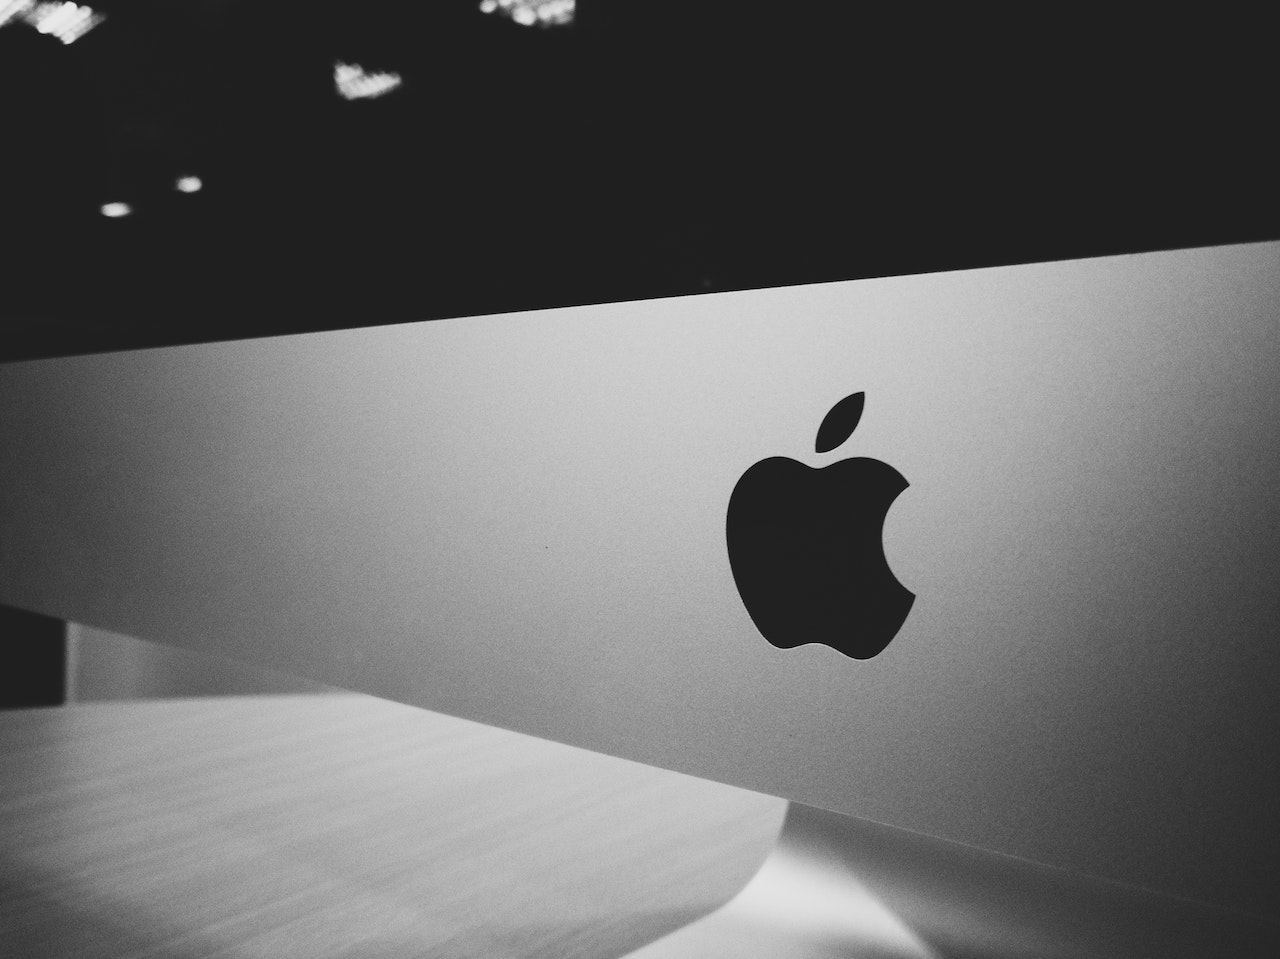 Comment ChatGPT aurait pu être intégré dans les produits Apple selon Steve Jobs